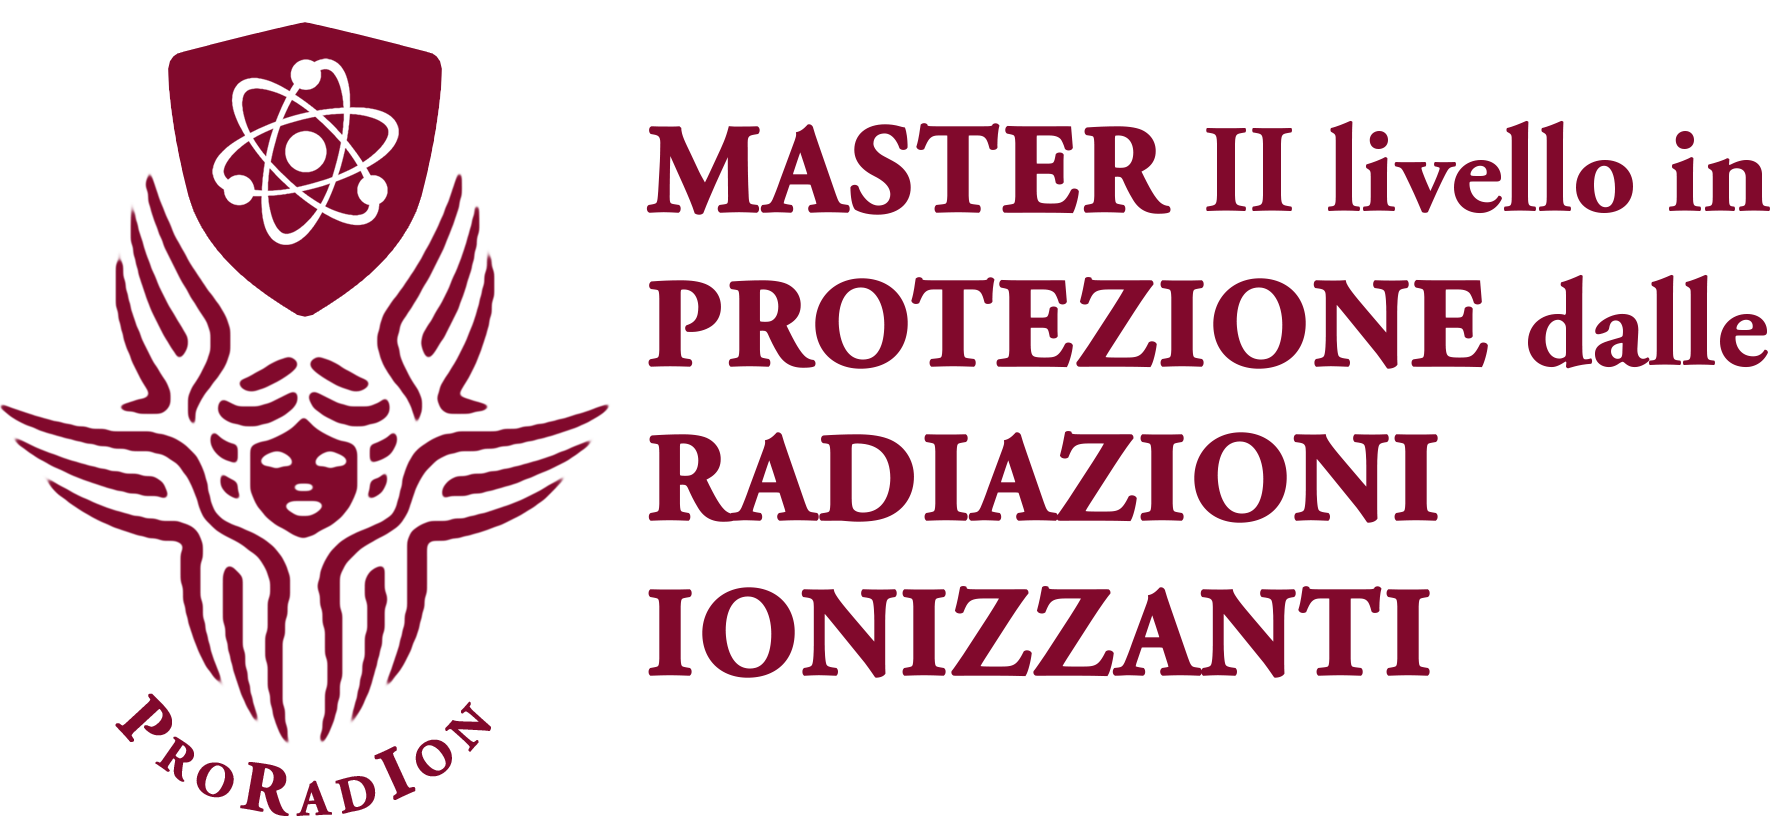 Master 2° livello in Protezione dalle Radiazioni Ionizzanti